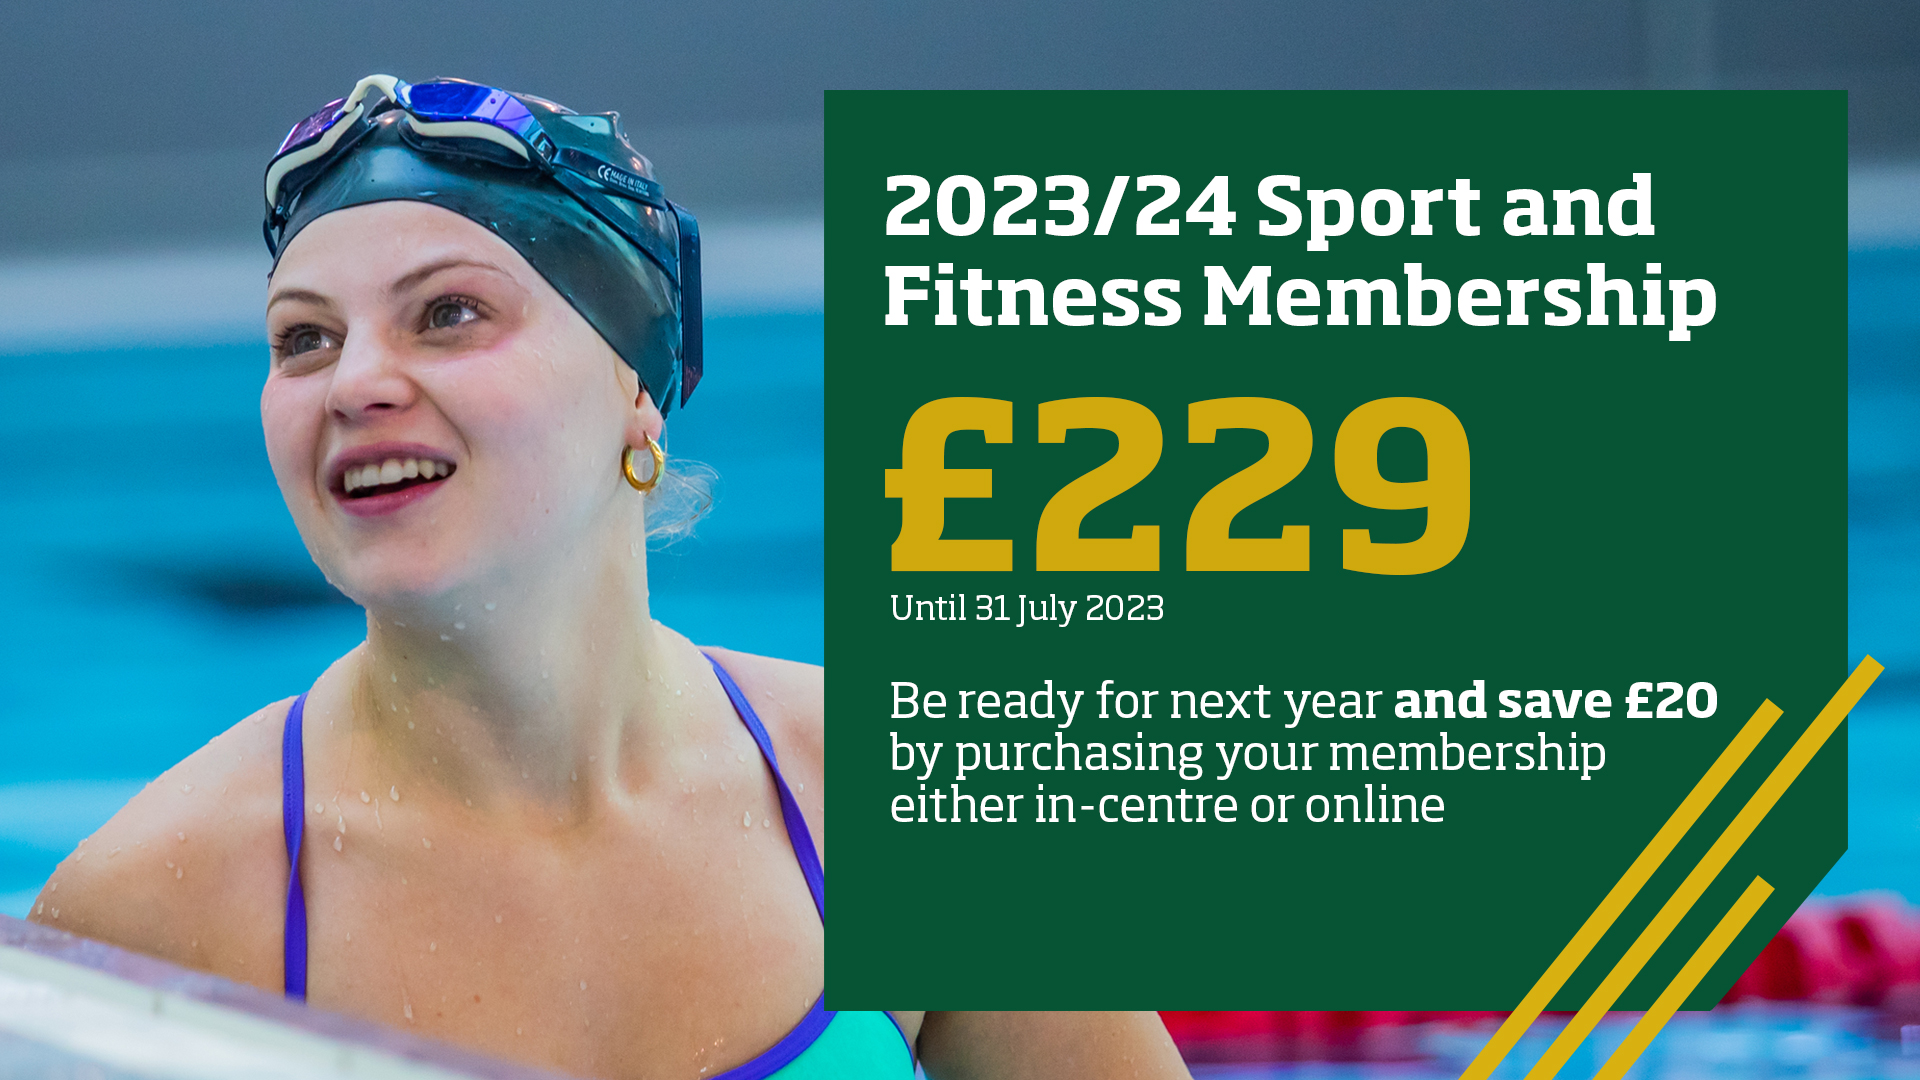 £229 student membership for 2023/24